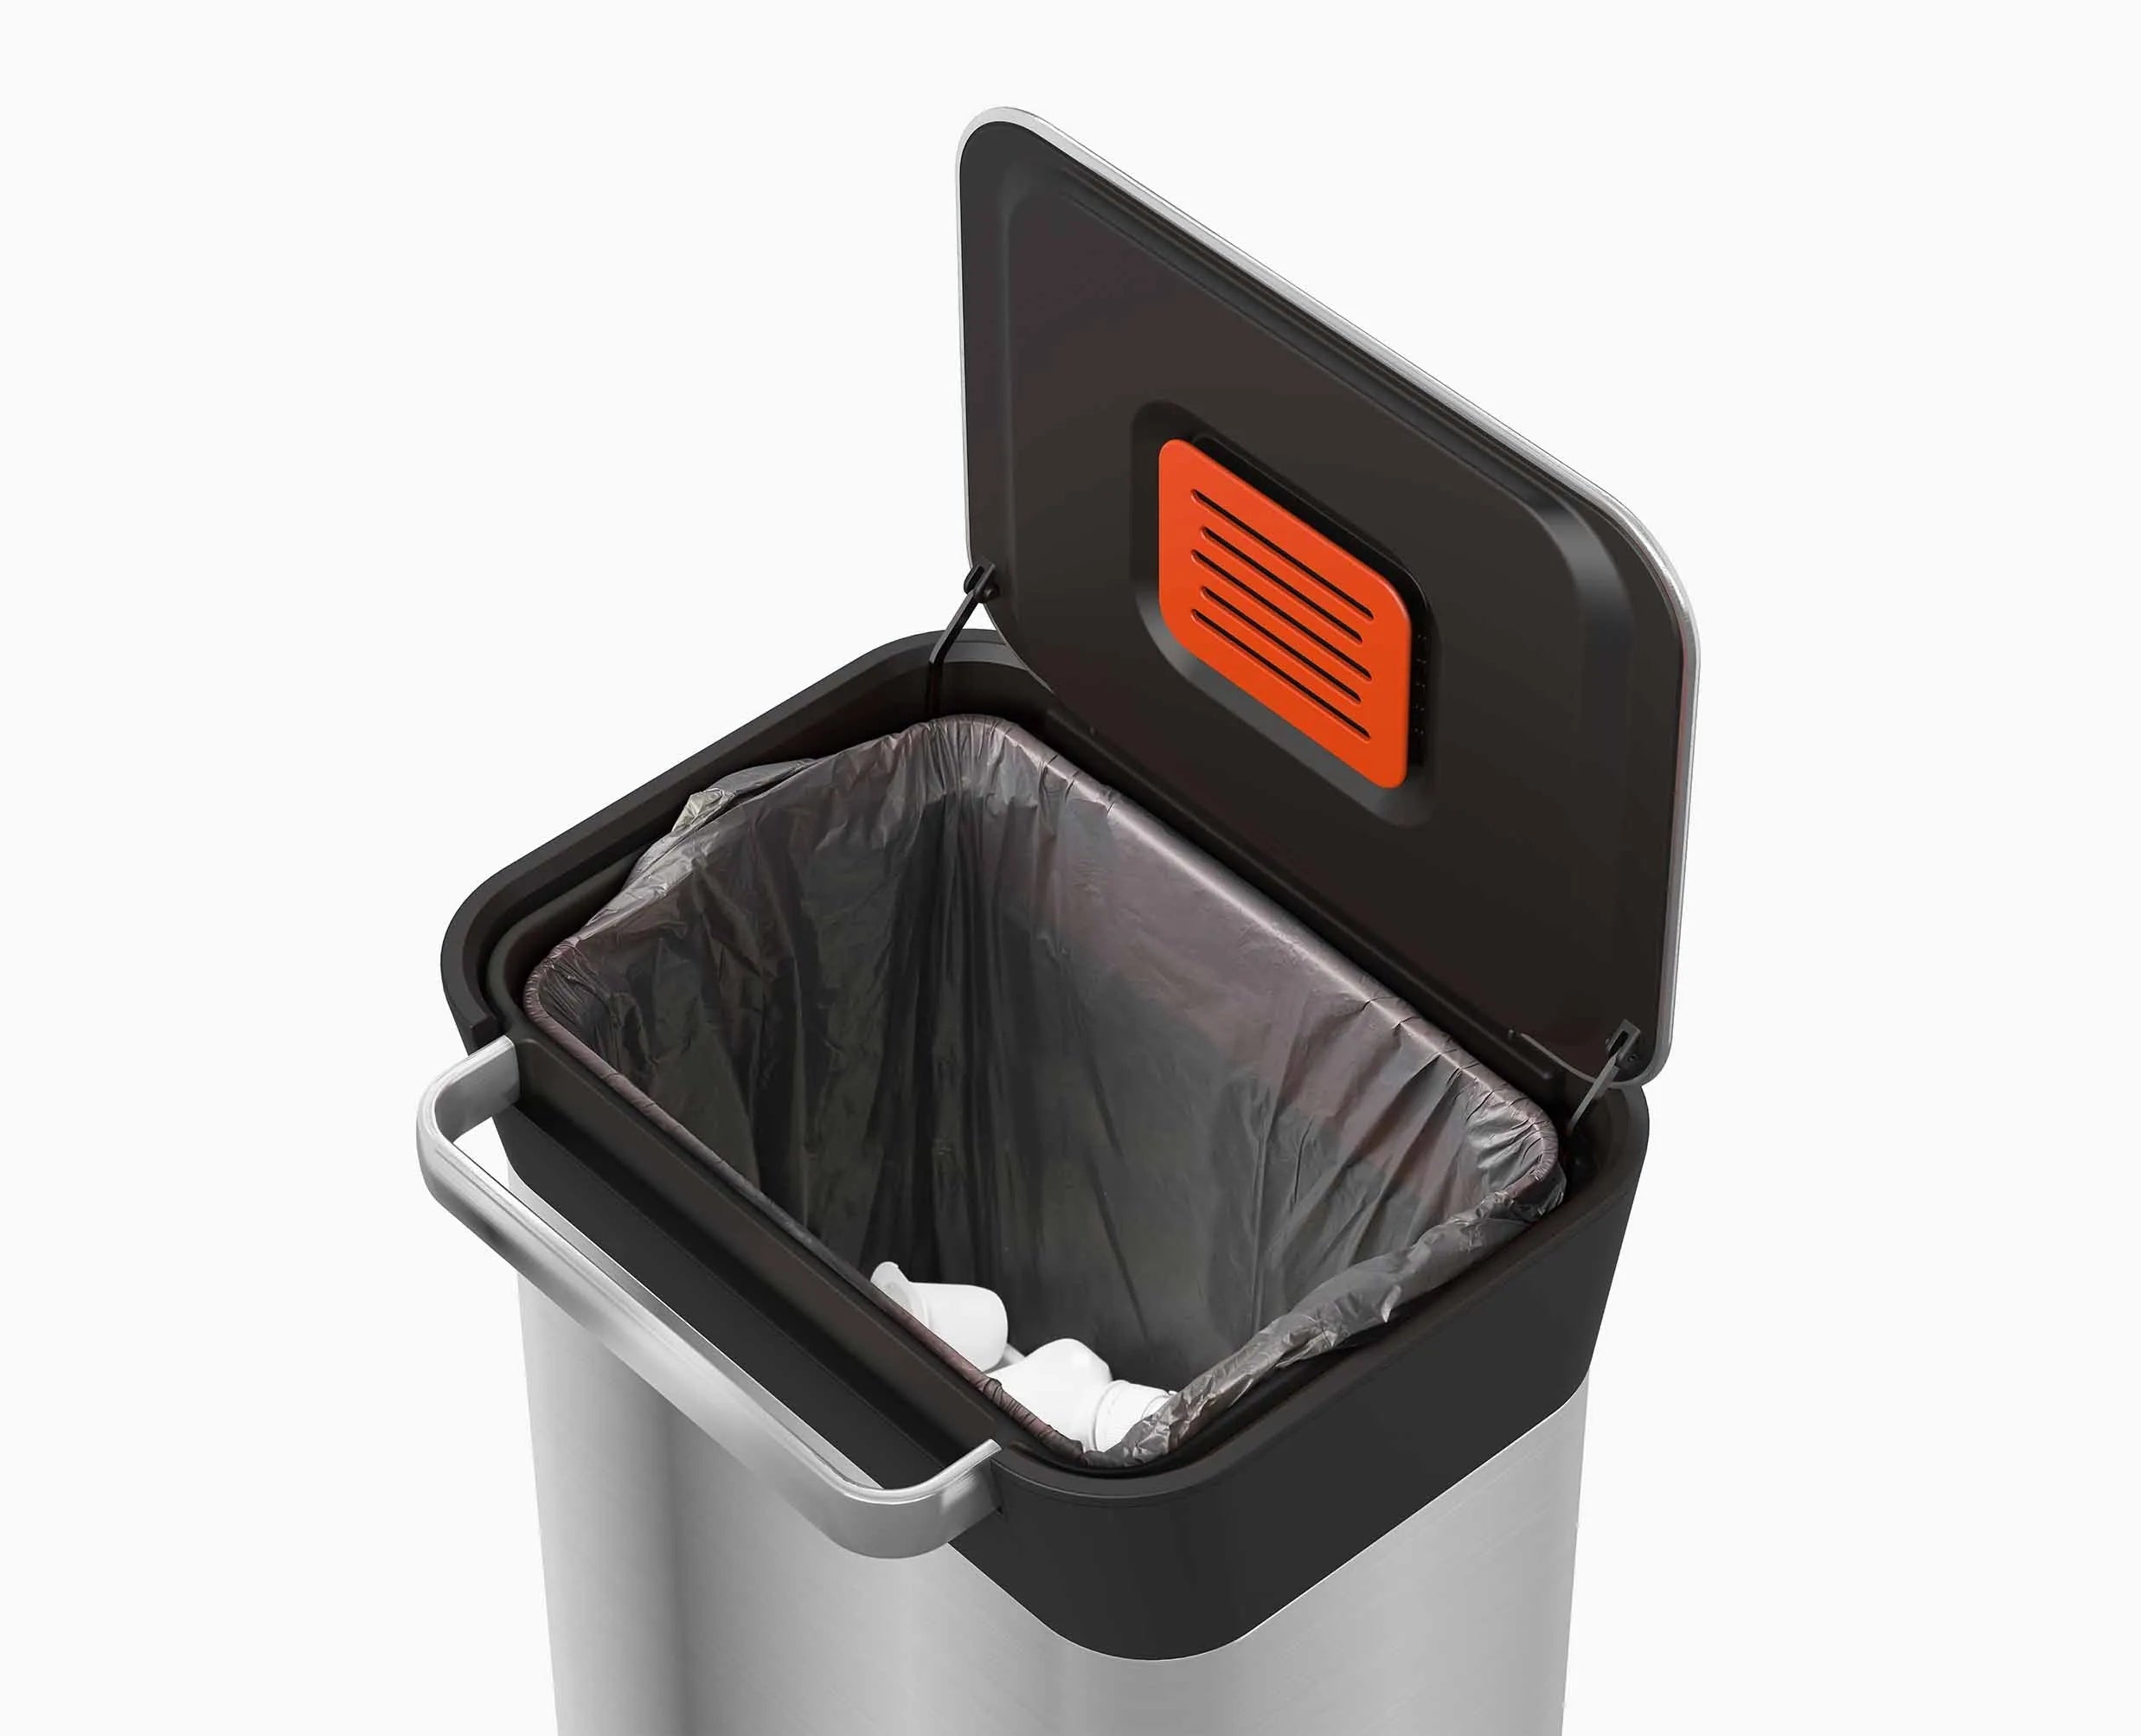 Tasseur et compacteur de poubelles pour diminuer les déchets